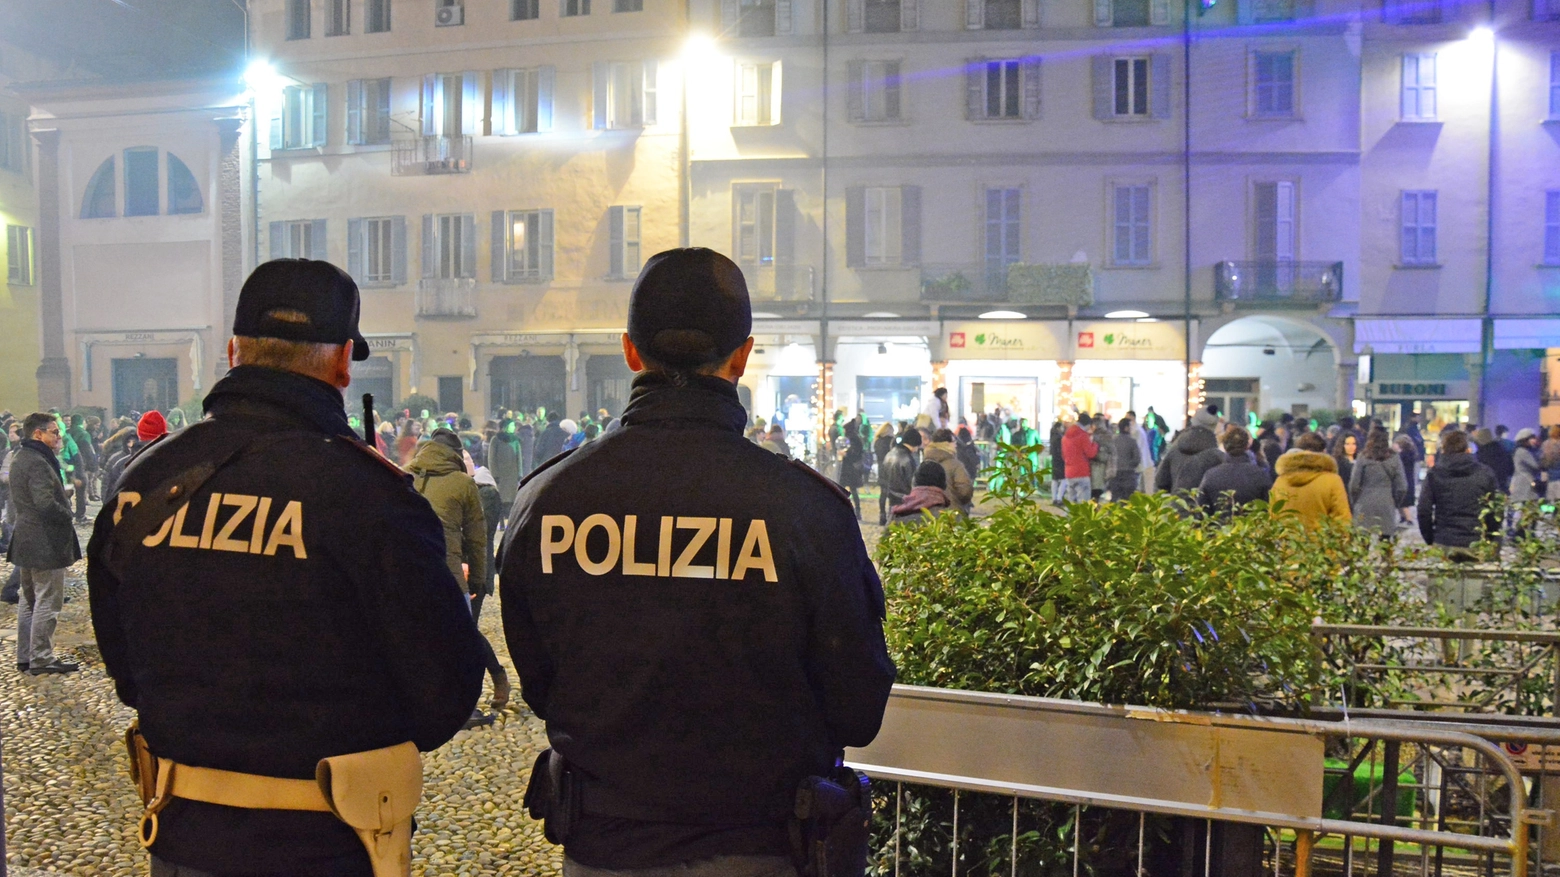 Le indagini sono affidate alla Polizia di Pavia